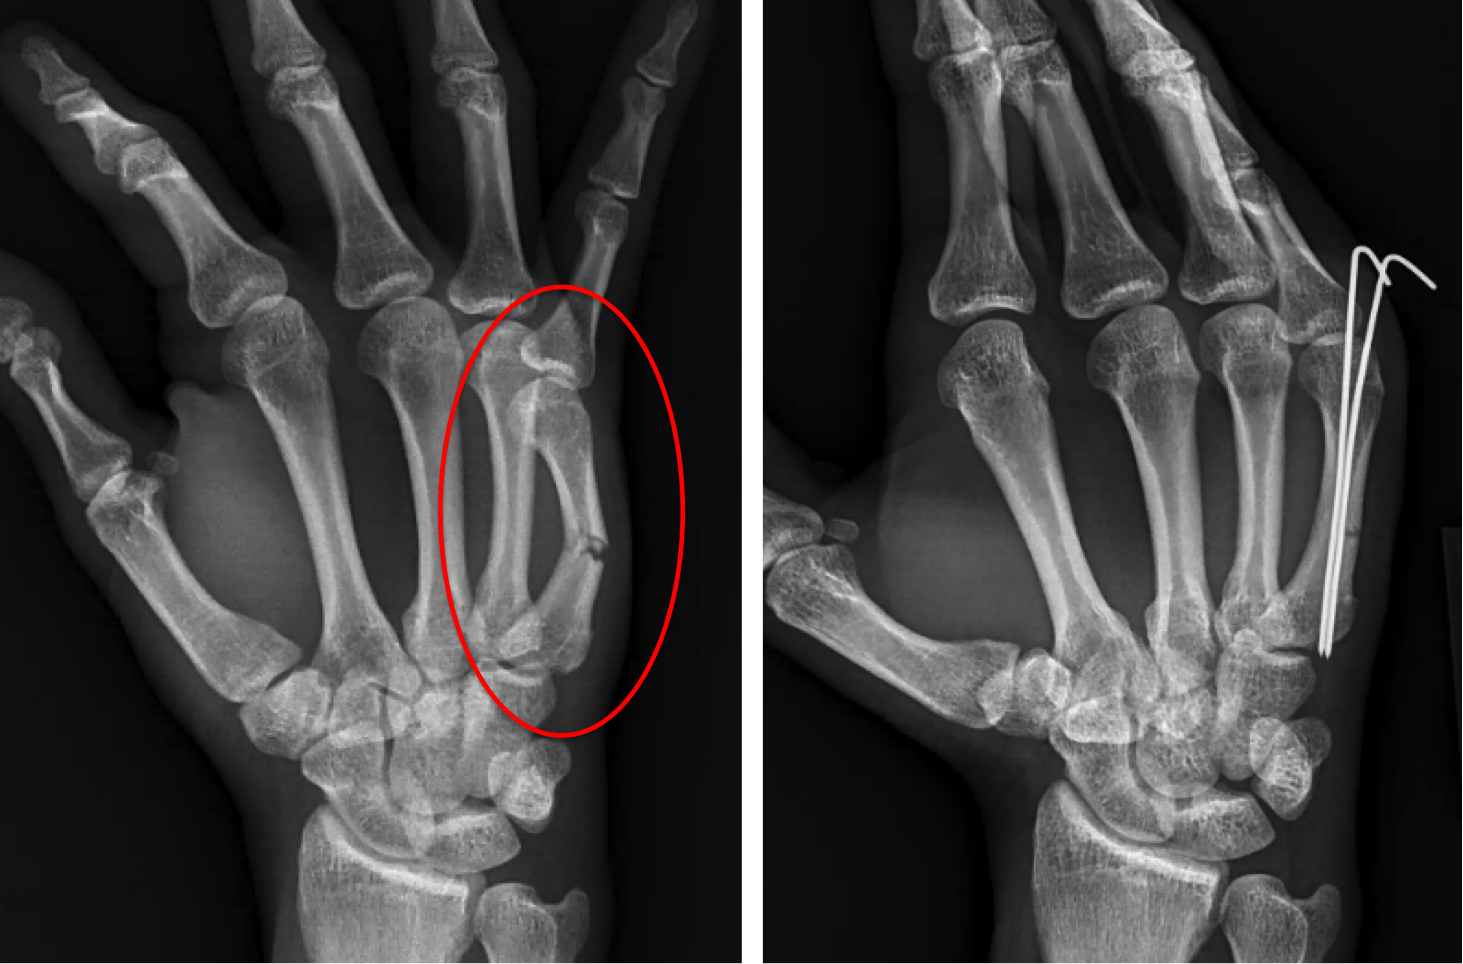 Hand Fracture Raleigh Hand Surgery — Joseph J Schreiber Md